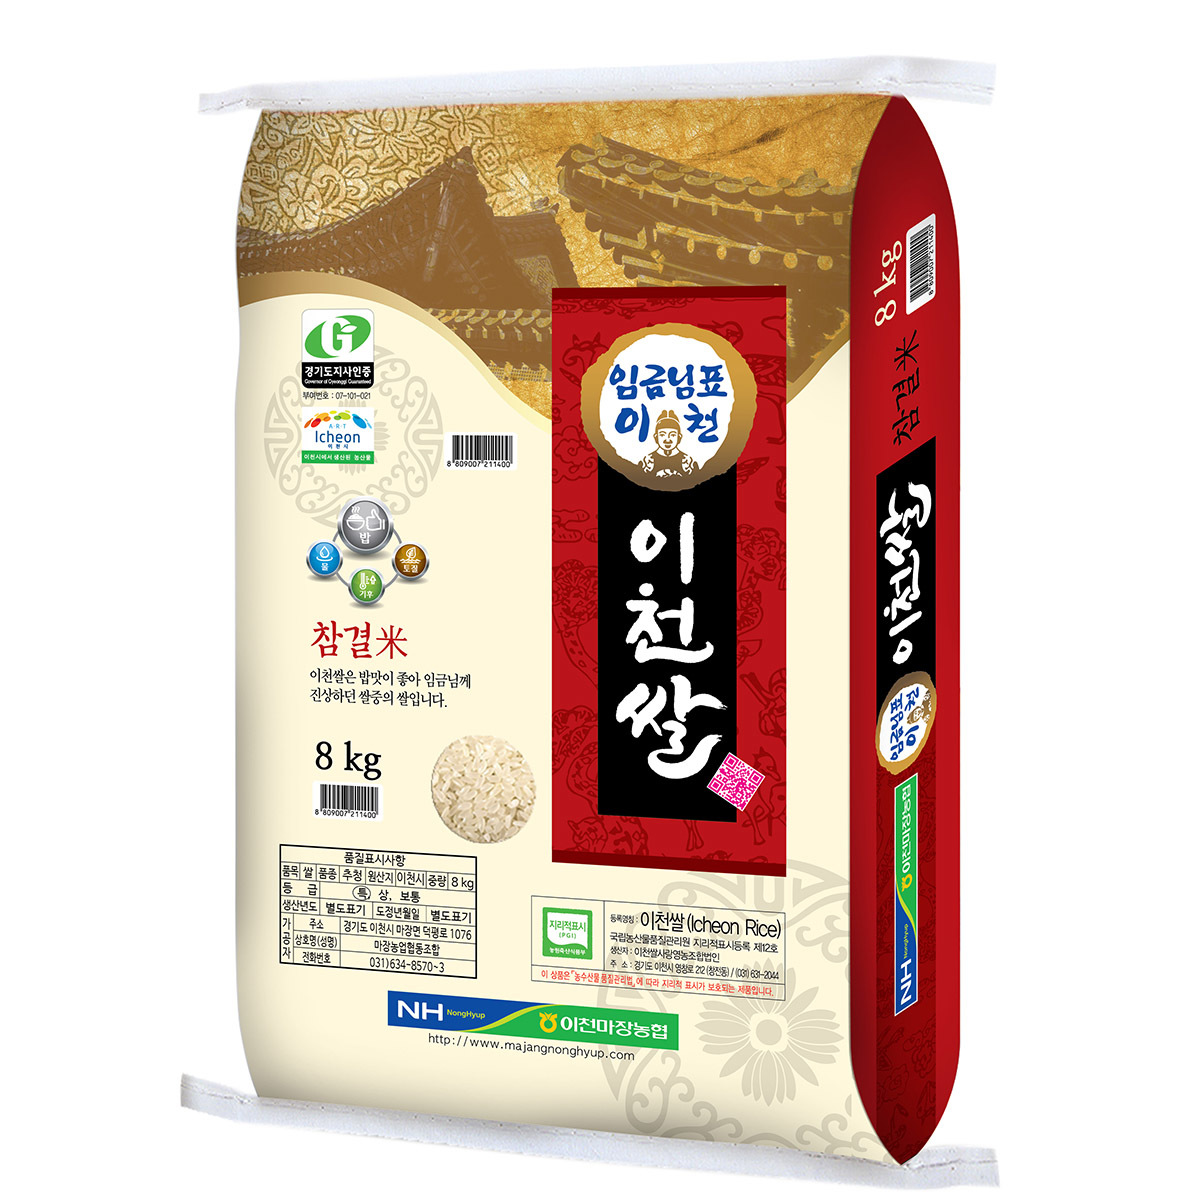 마장농협 임금님표 이천쌀(2022년 햅쌀) 8kg x 2